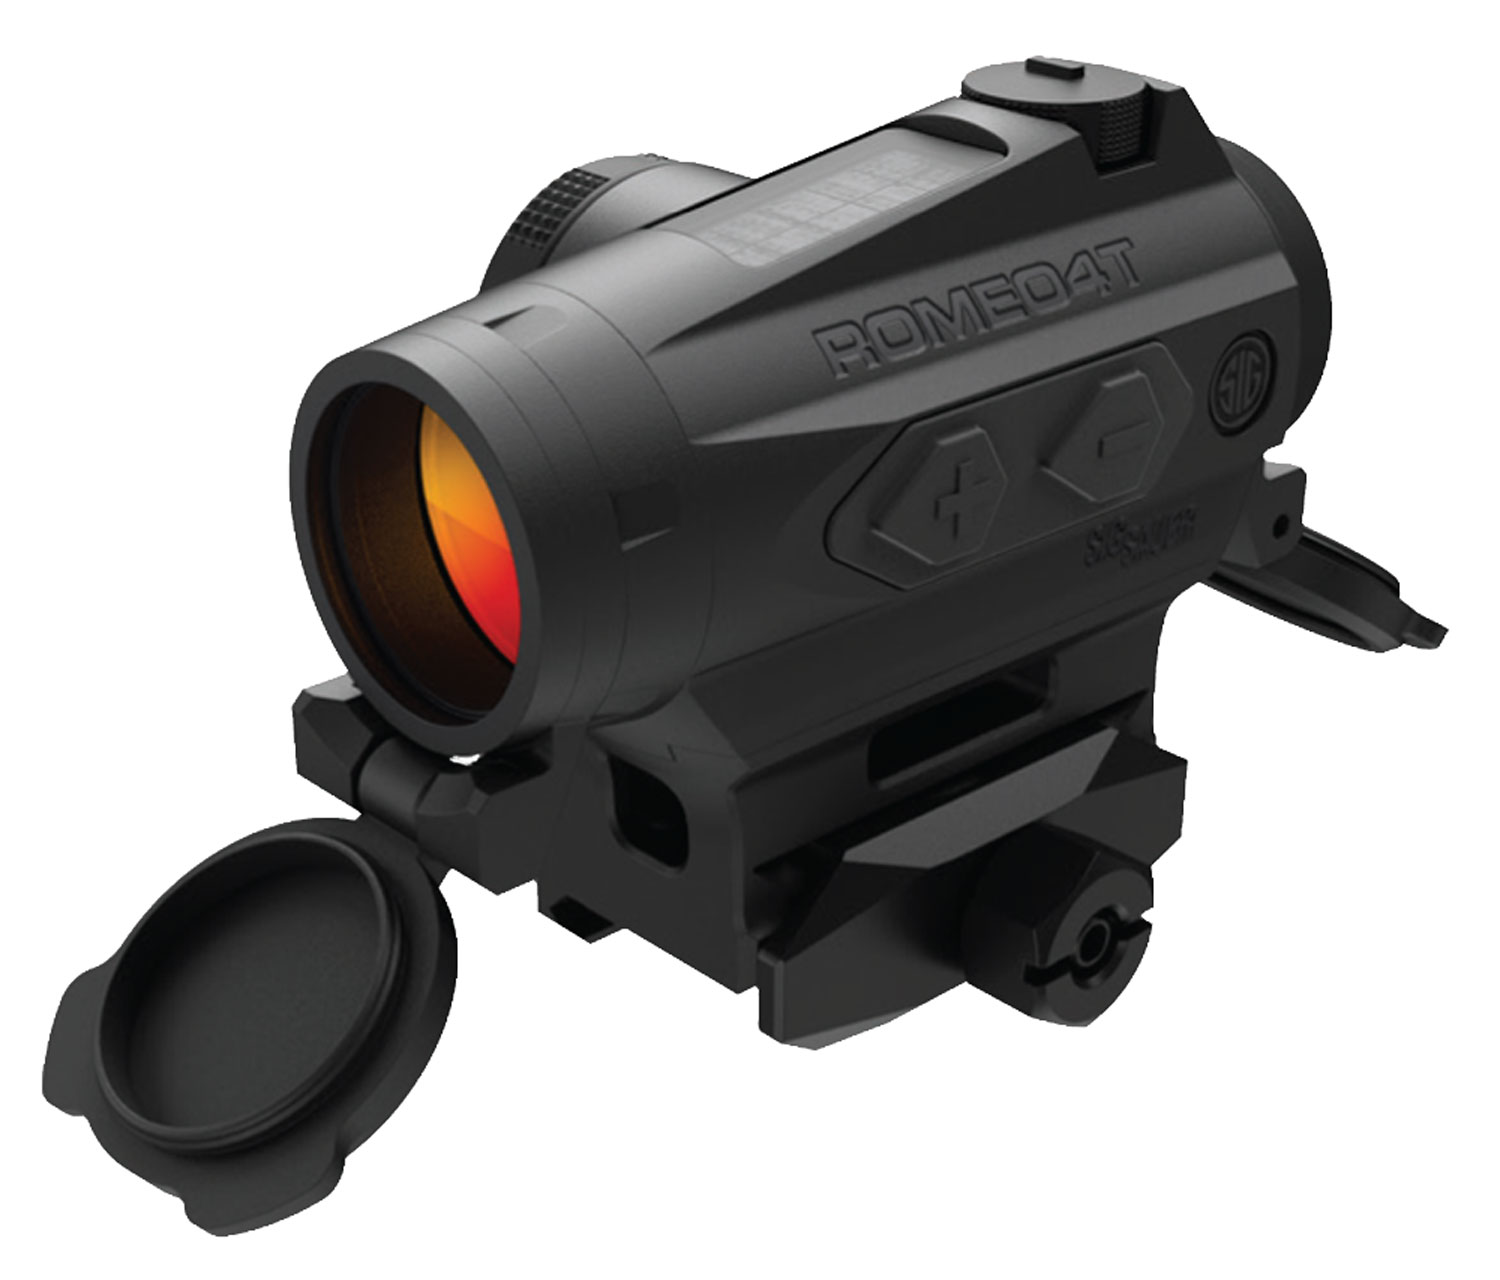 Sig Sauer ROMEO4T Tactical Solar Powered Red Dot Sight - 1x20mm 1 MOA Red Dot Ballistic CirclePlex